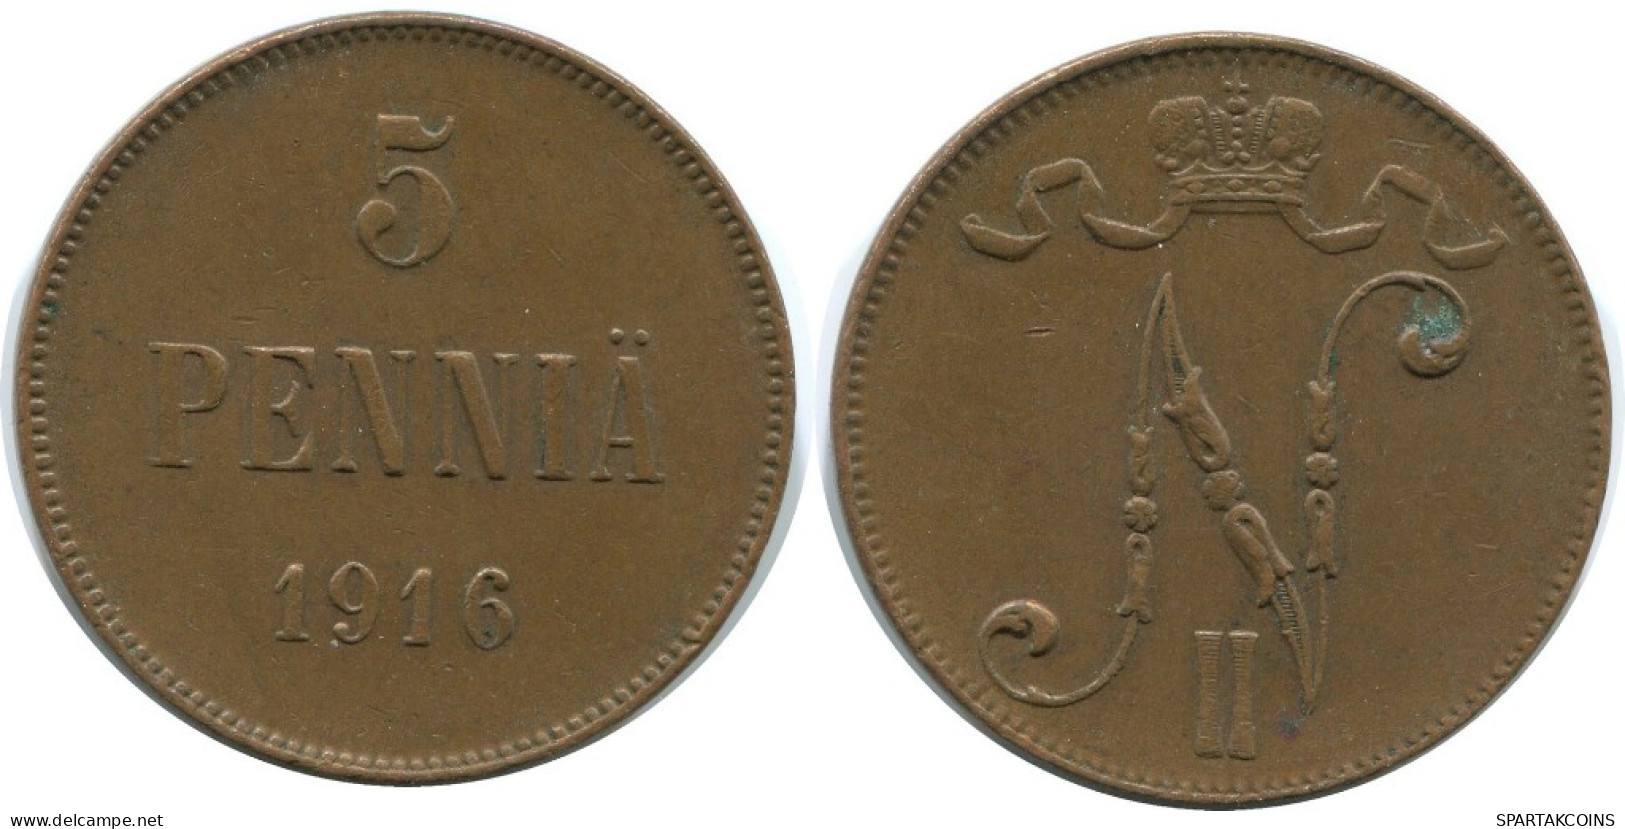 5 PENNIA 1916 FINLAND Coin RUSSIA EMPIRE #AB194.5.U.A - Finlande